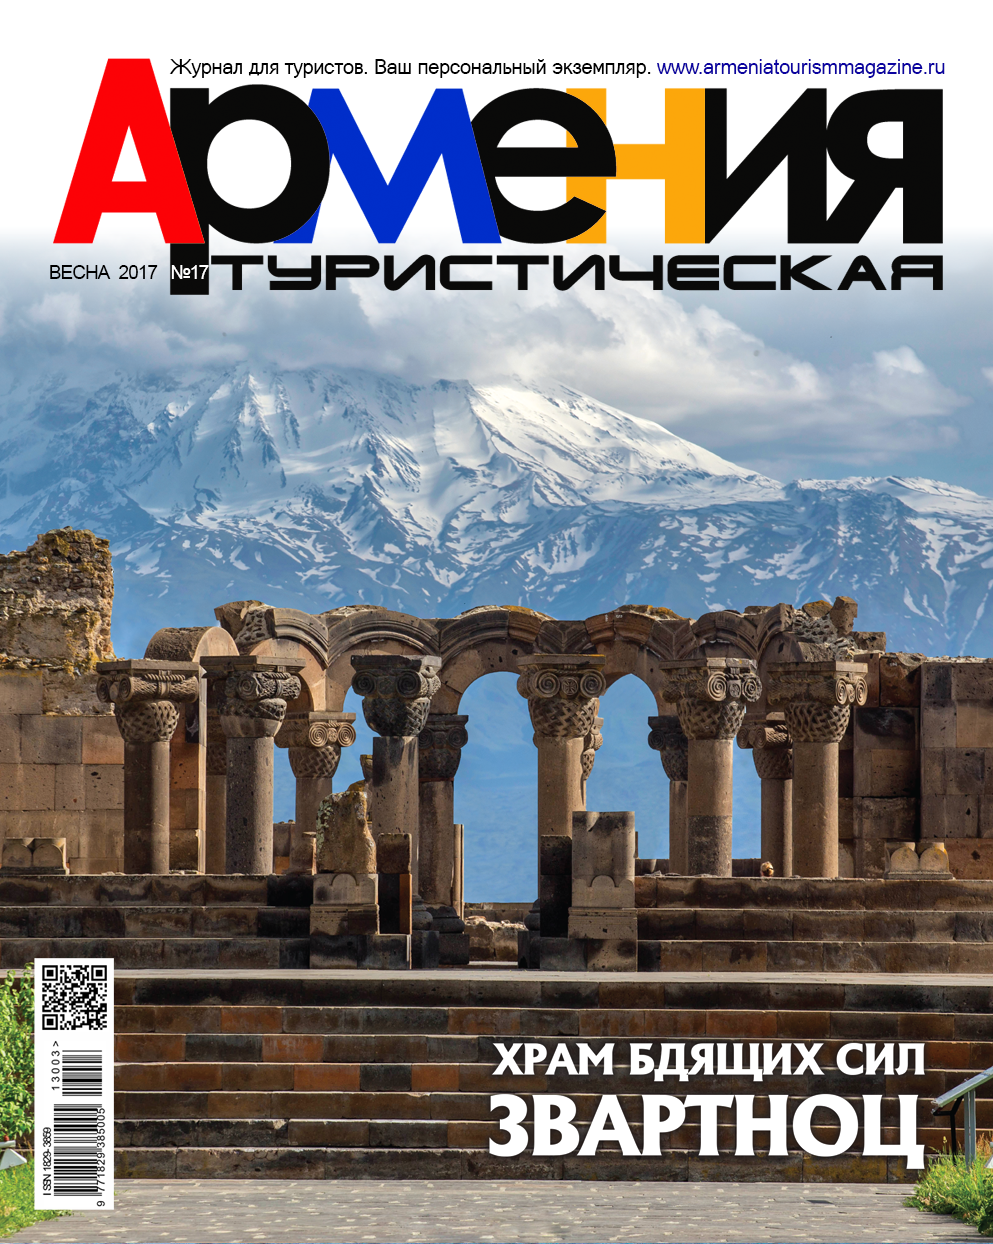 Армения туристическая, № 19